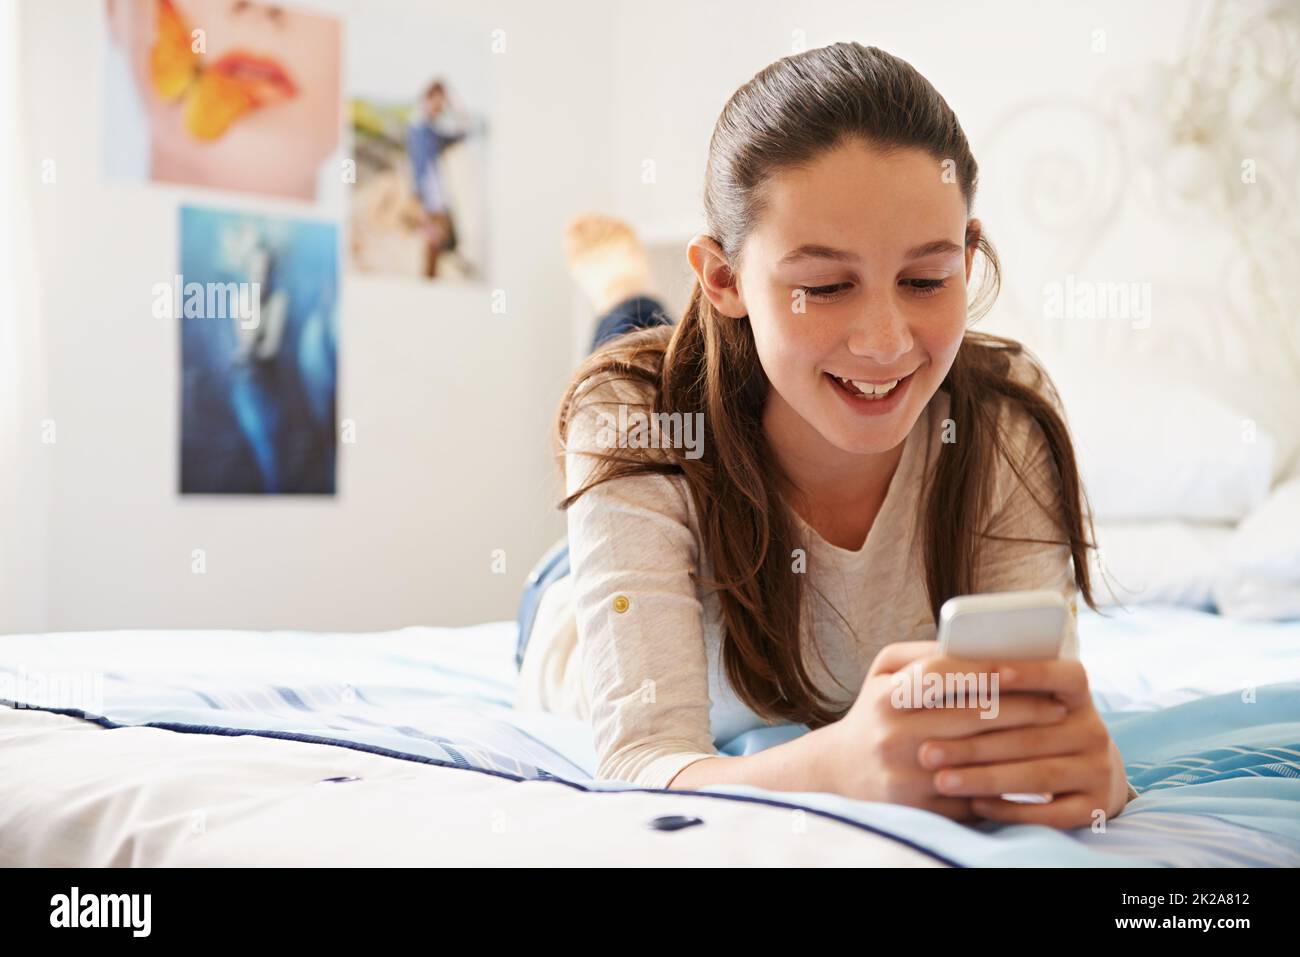 Planen Sie etwas großes. Aufnahme eines Teenagers, das auf ihrem Bett liegt und auf ihrem Telefon SMS schreibt. Stockfoto